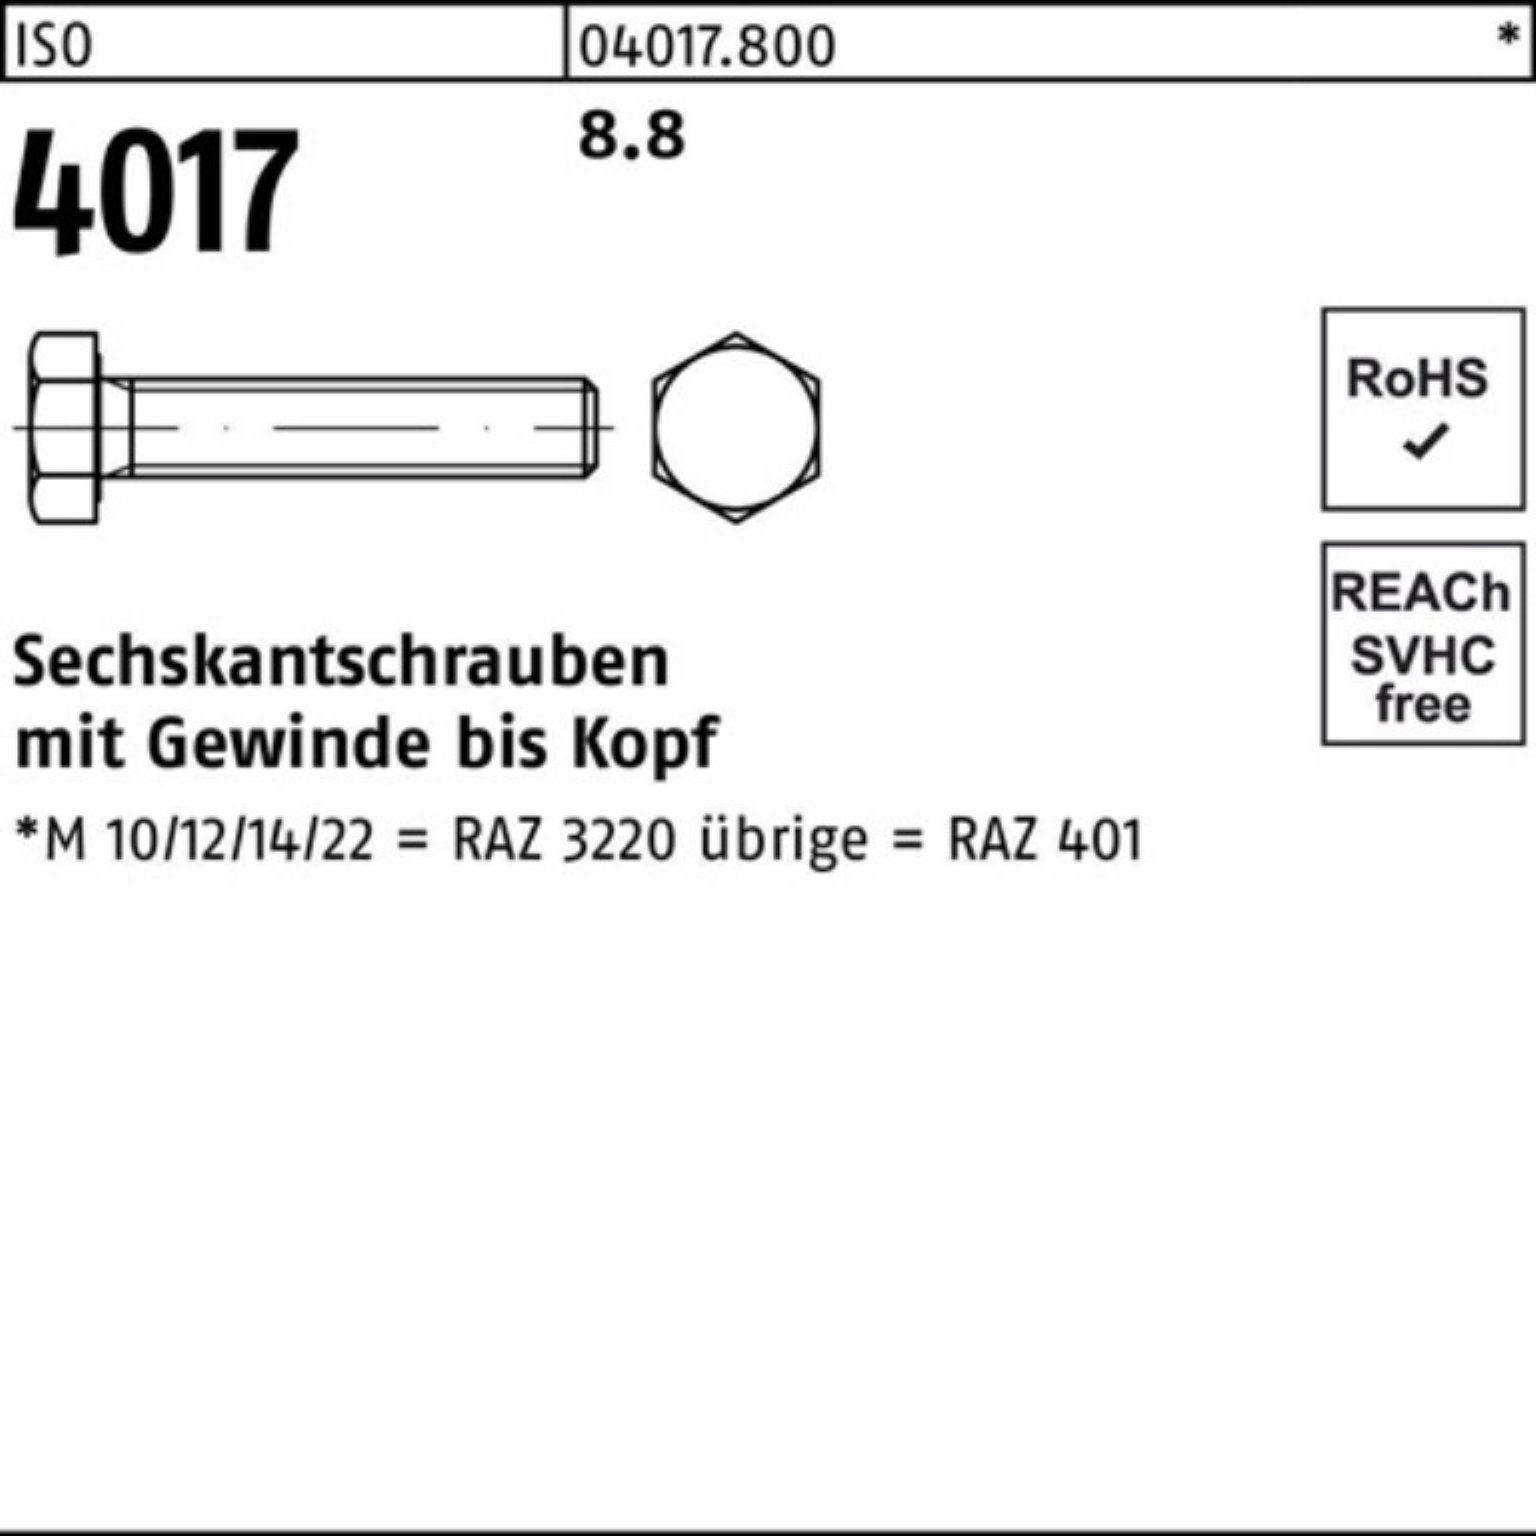 Sechskantschraube 200er 8.8 Pack ISO Bufab ISO 4017 VG 4017 Stück Sechskantschraube 200 M8x 8